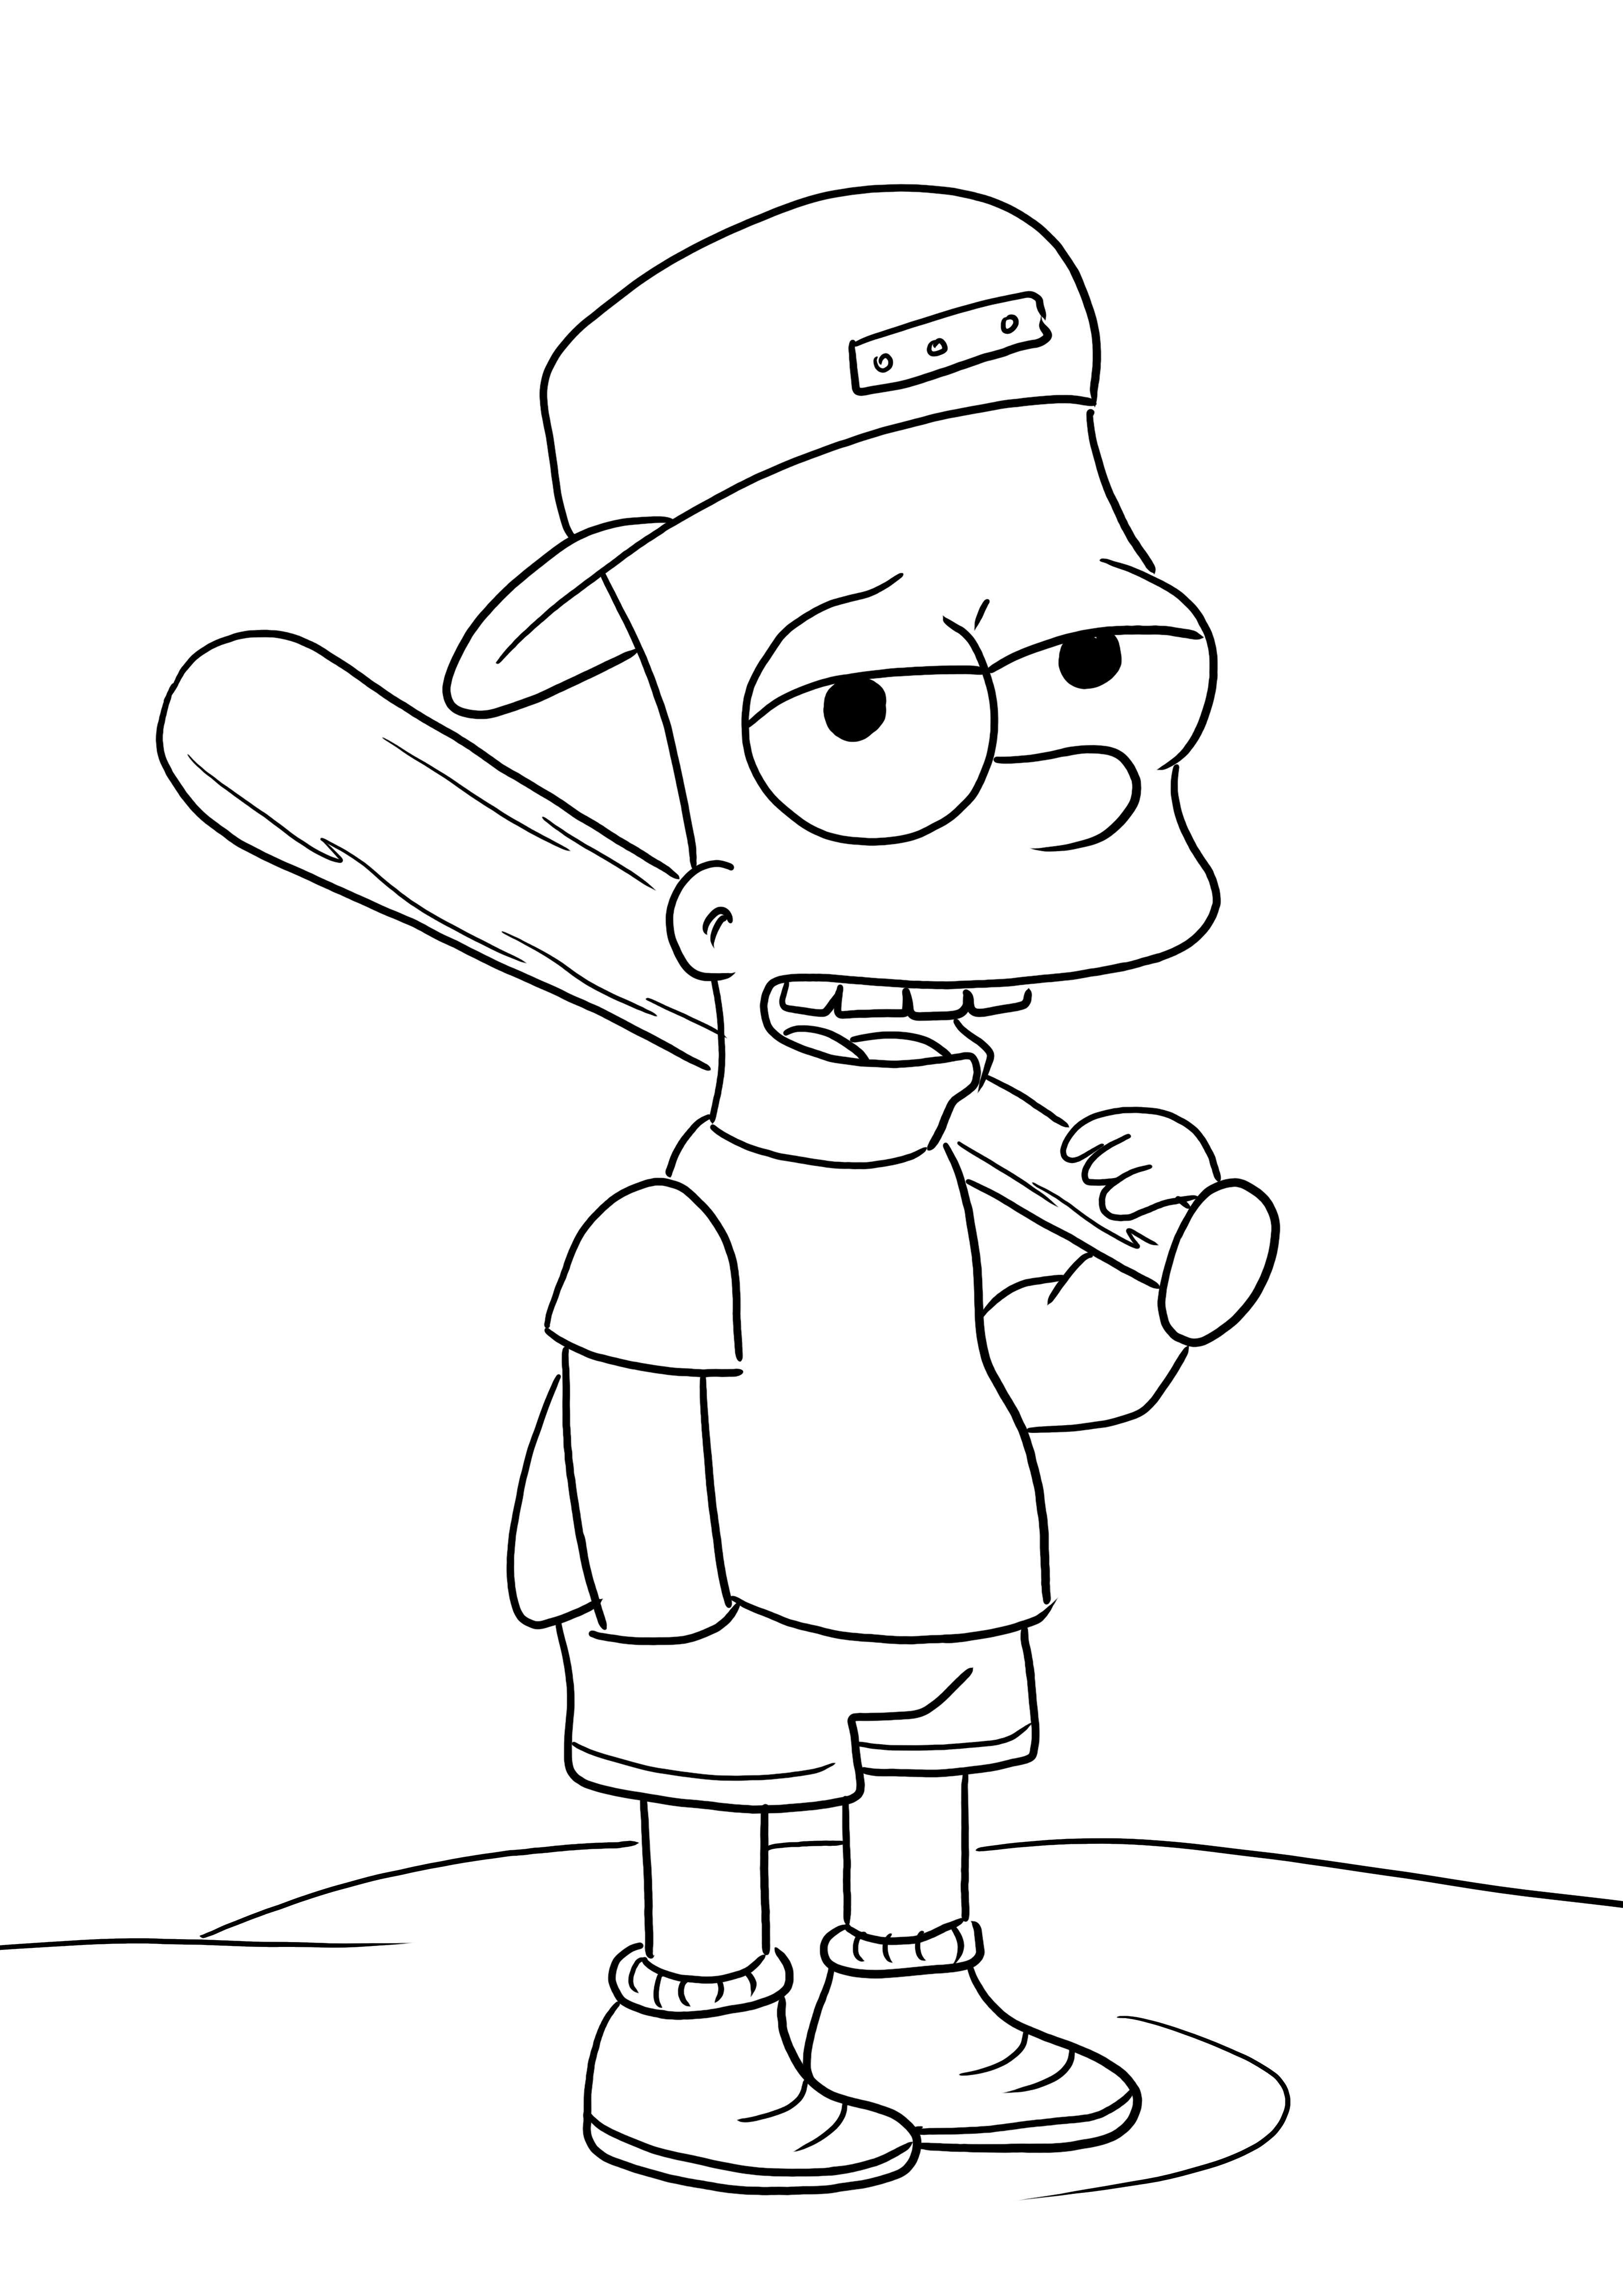 Bart Simpsons és baseballütője nyomat és szín mentes